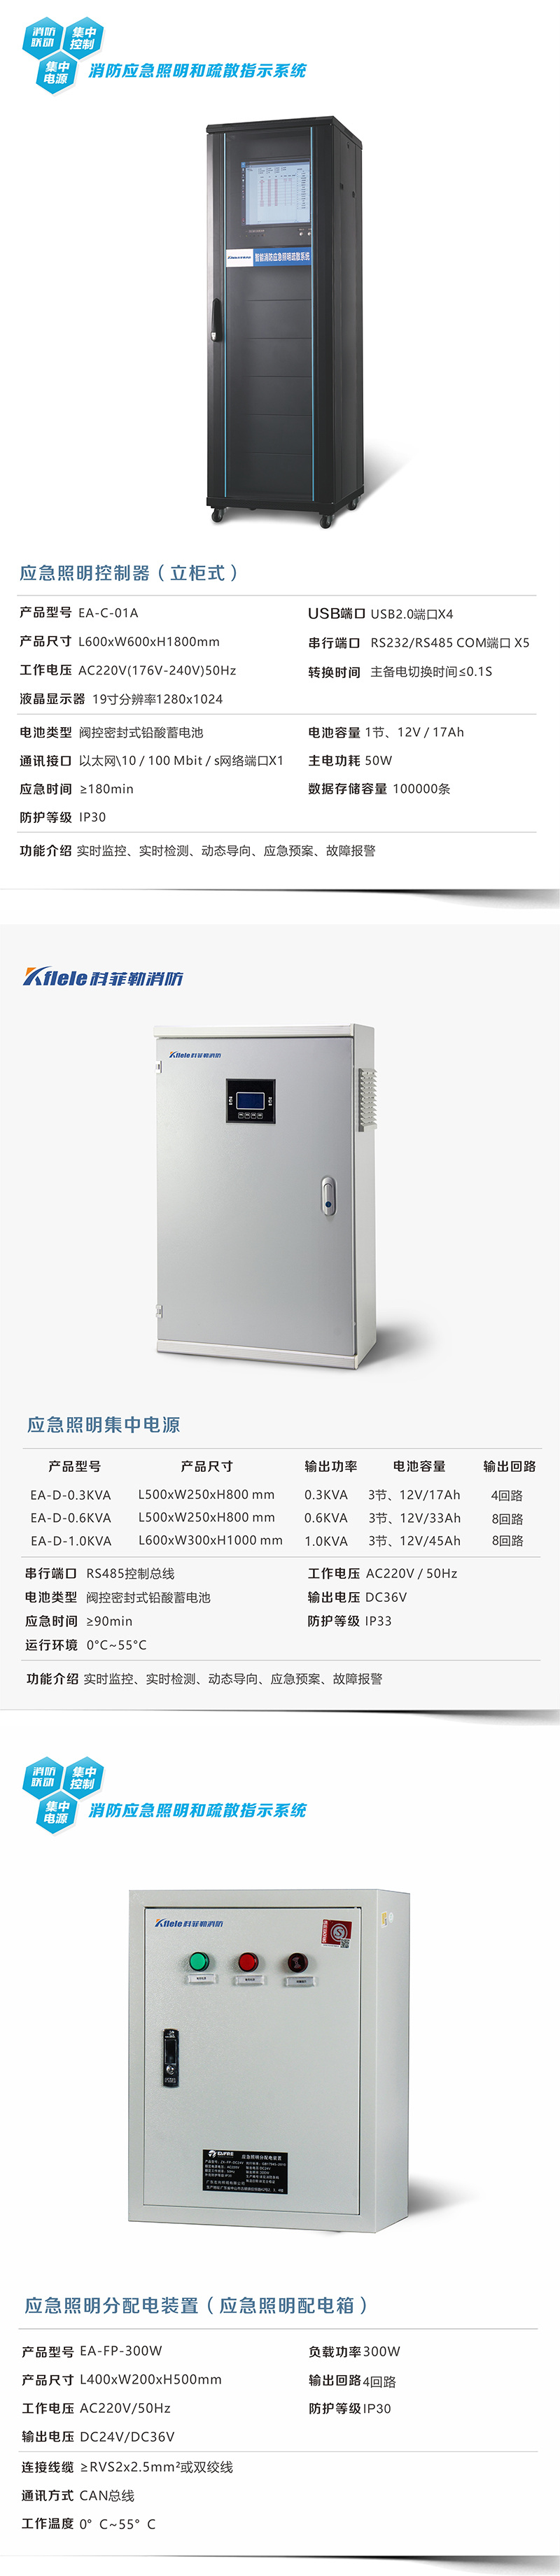 长沙DC36V应急照明集中电源规格